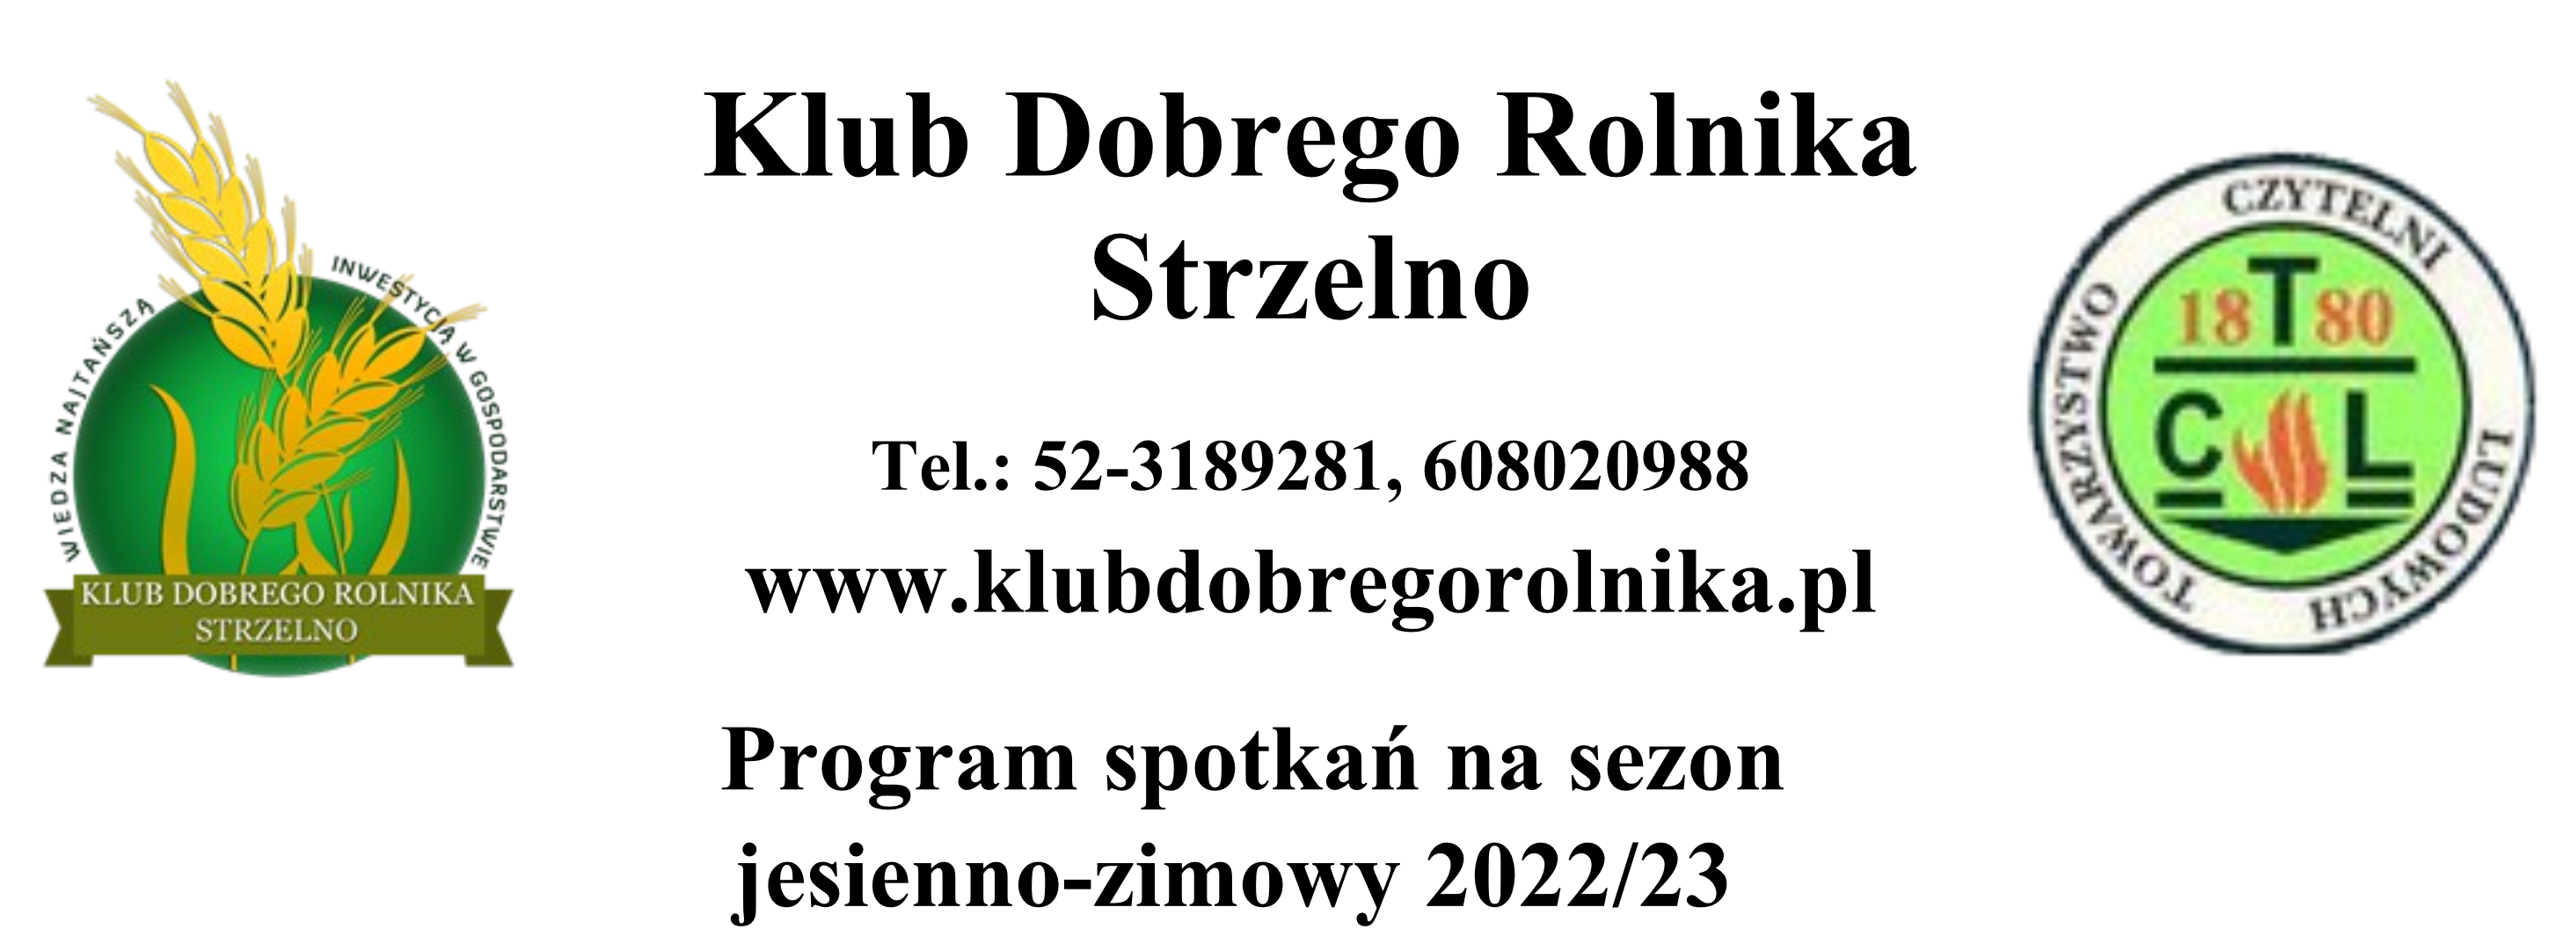 Program spotkań na sezon jesienno-zimowy 2022/23